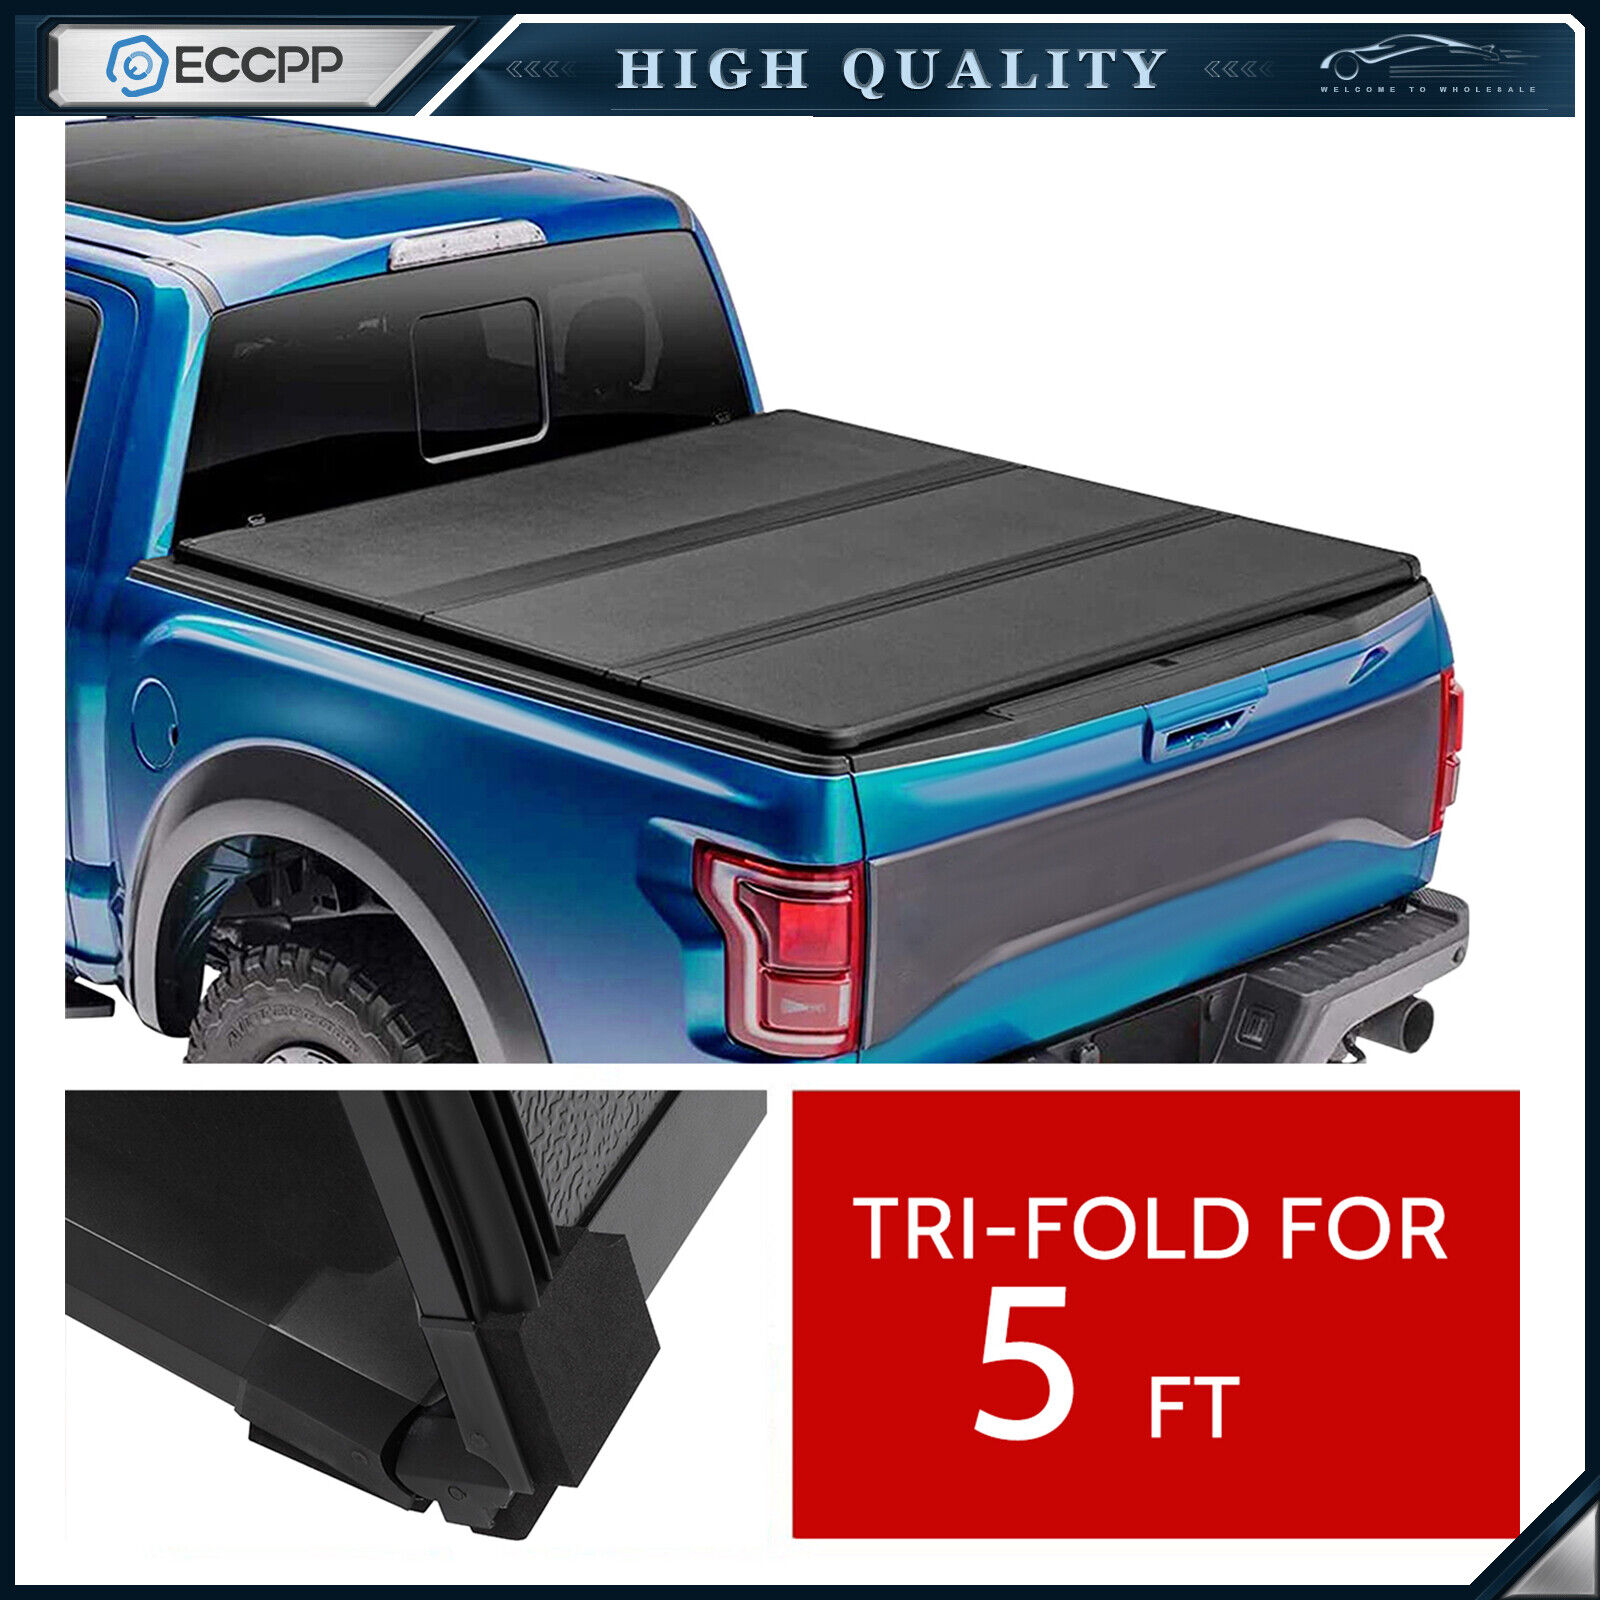 ECCPP Hard 3-Fold 5ft Bed Tonneau Cover For 04-13 Colorado/Canyon Cover